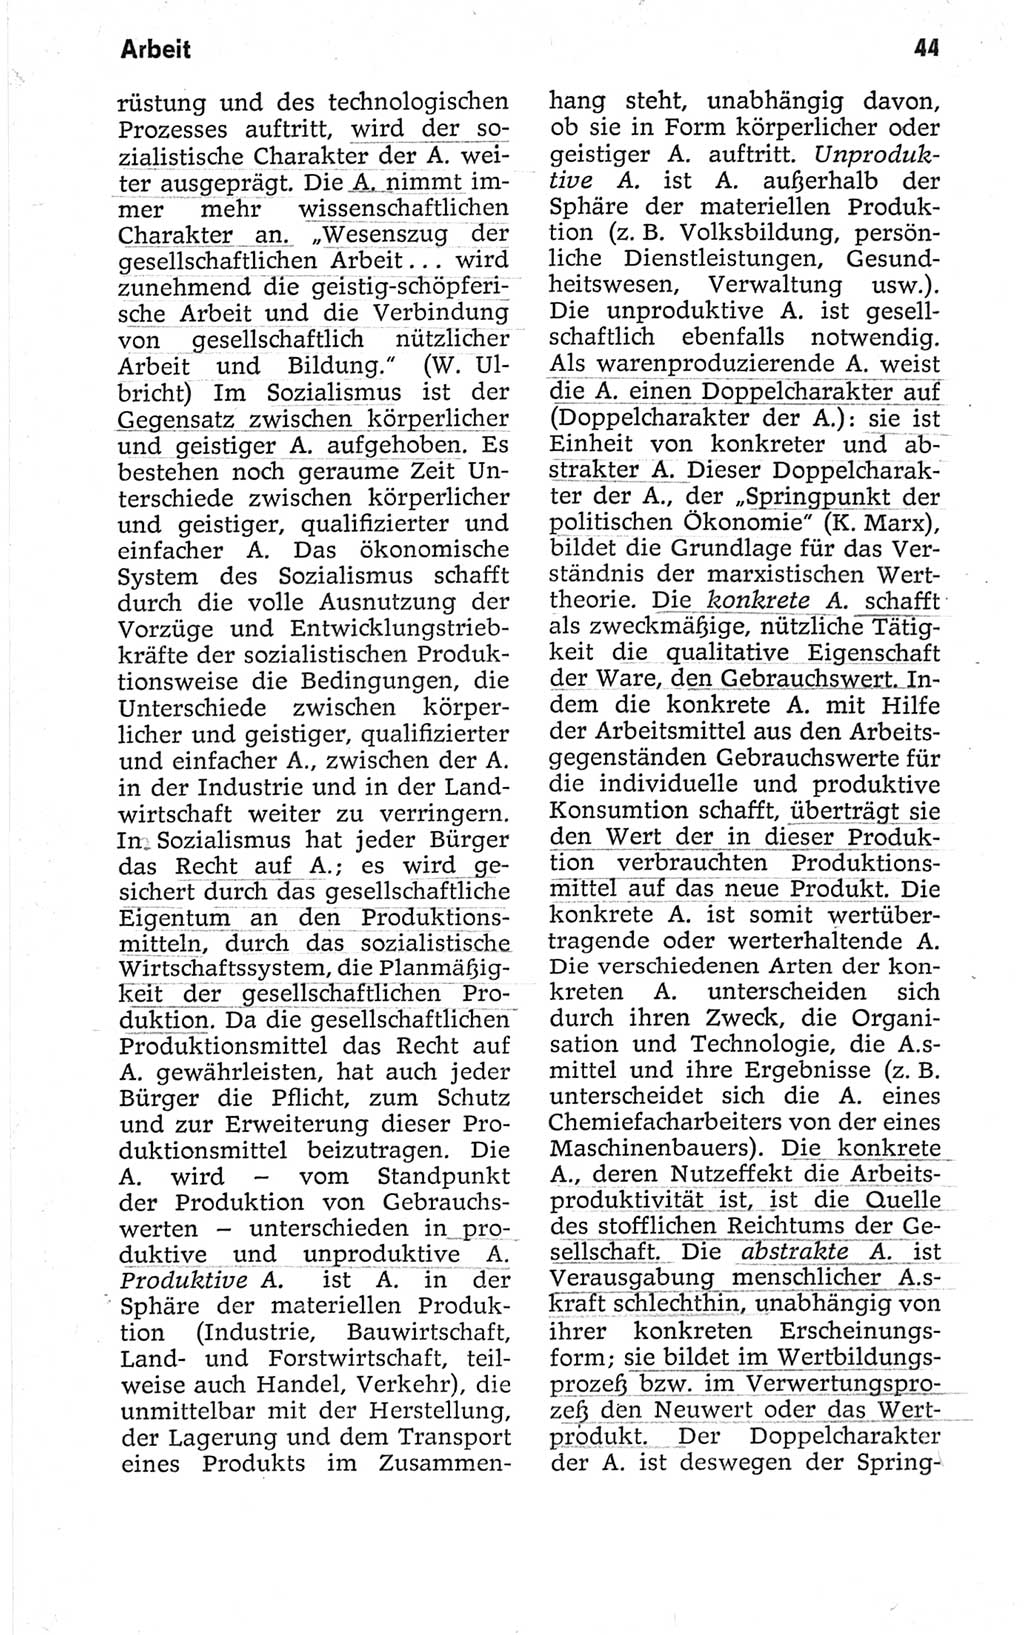 Kleines politisches Wörterbuch [Deutsche Demokratische Republik (DDR)] 1967, Seite 44 (Kl. pol. Wb. DDR 1967, S. 44)